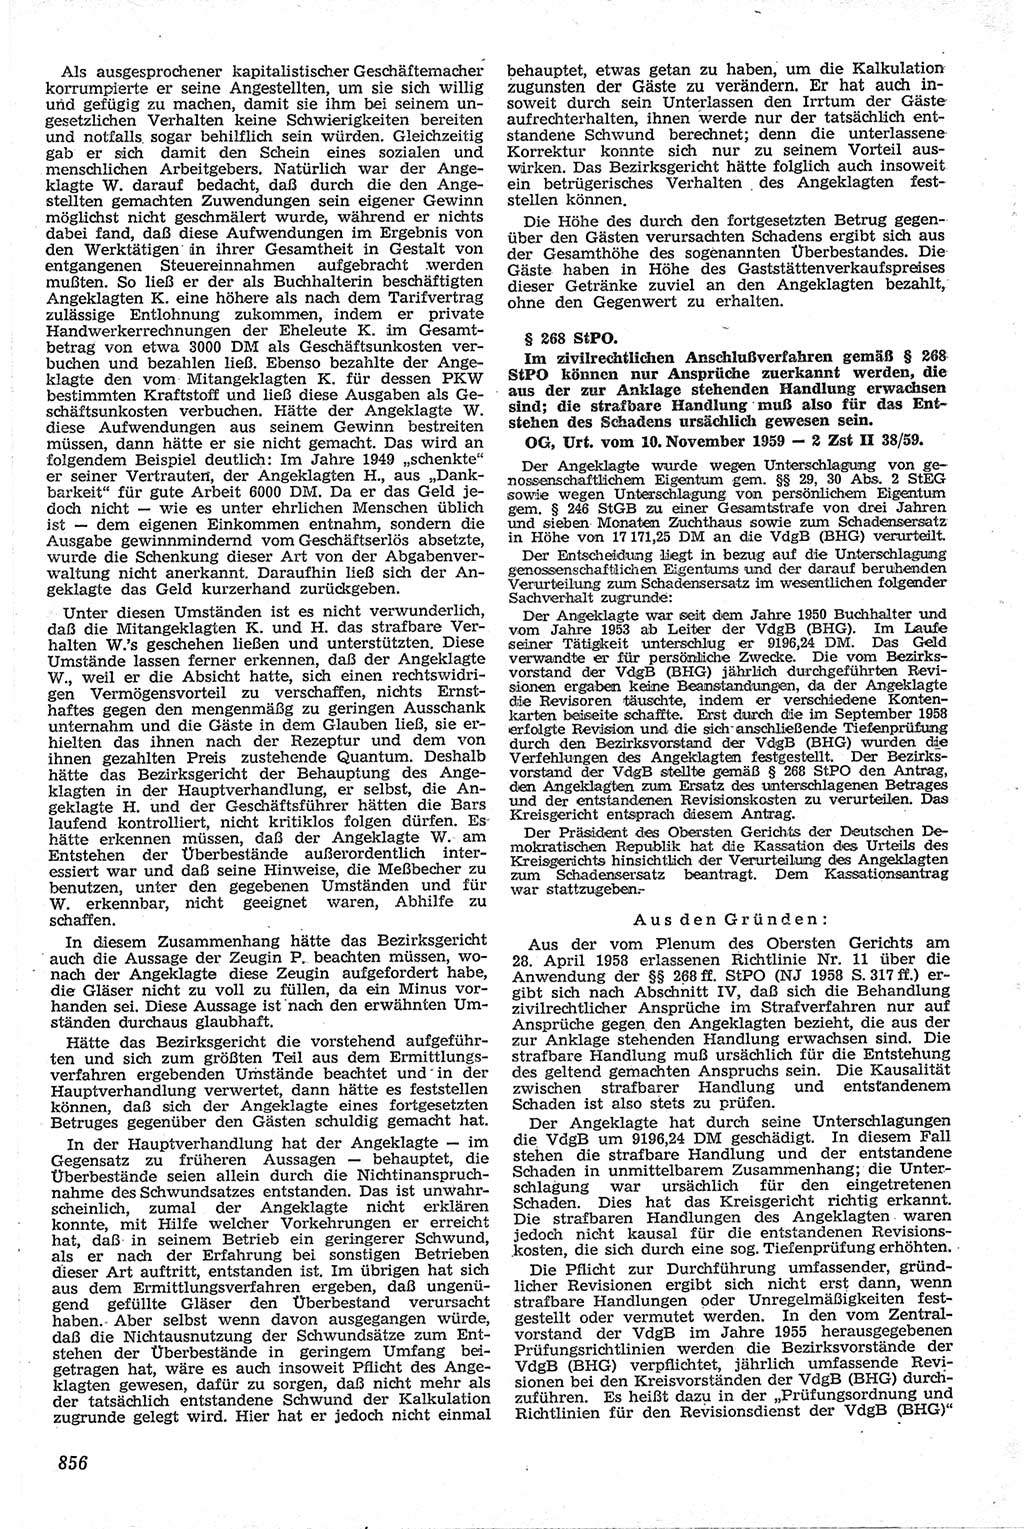 Neue Justiz (NJ), Zeitschrift für Recht und Rechtswissenschaft [Deutsche Demokratische Republik (DDR)], 13. Jahrgang 1959, Seite 856 (NJ DDR 1959, S. 856)